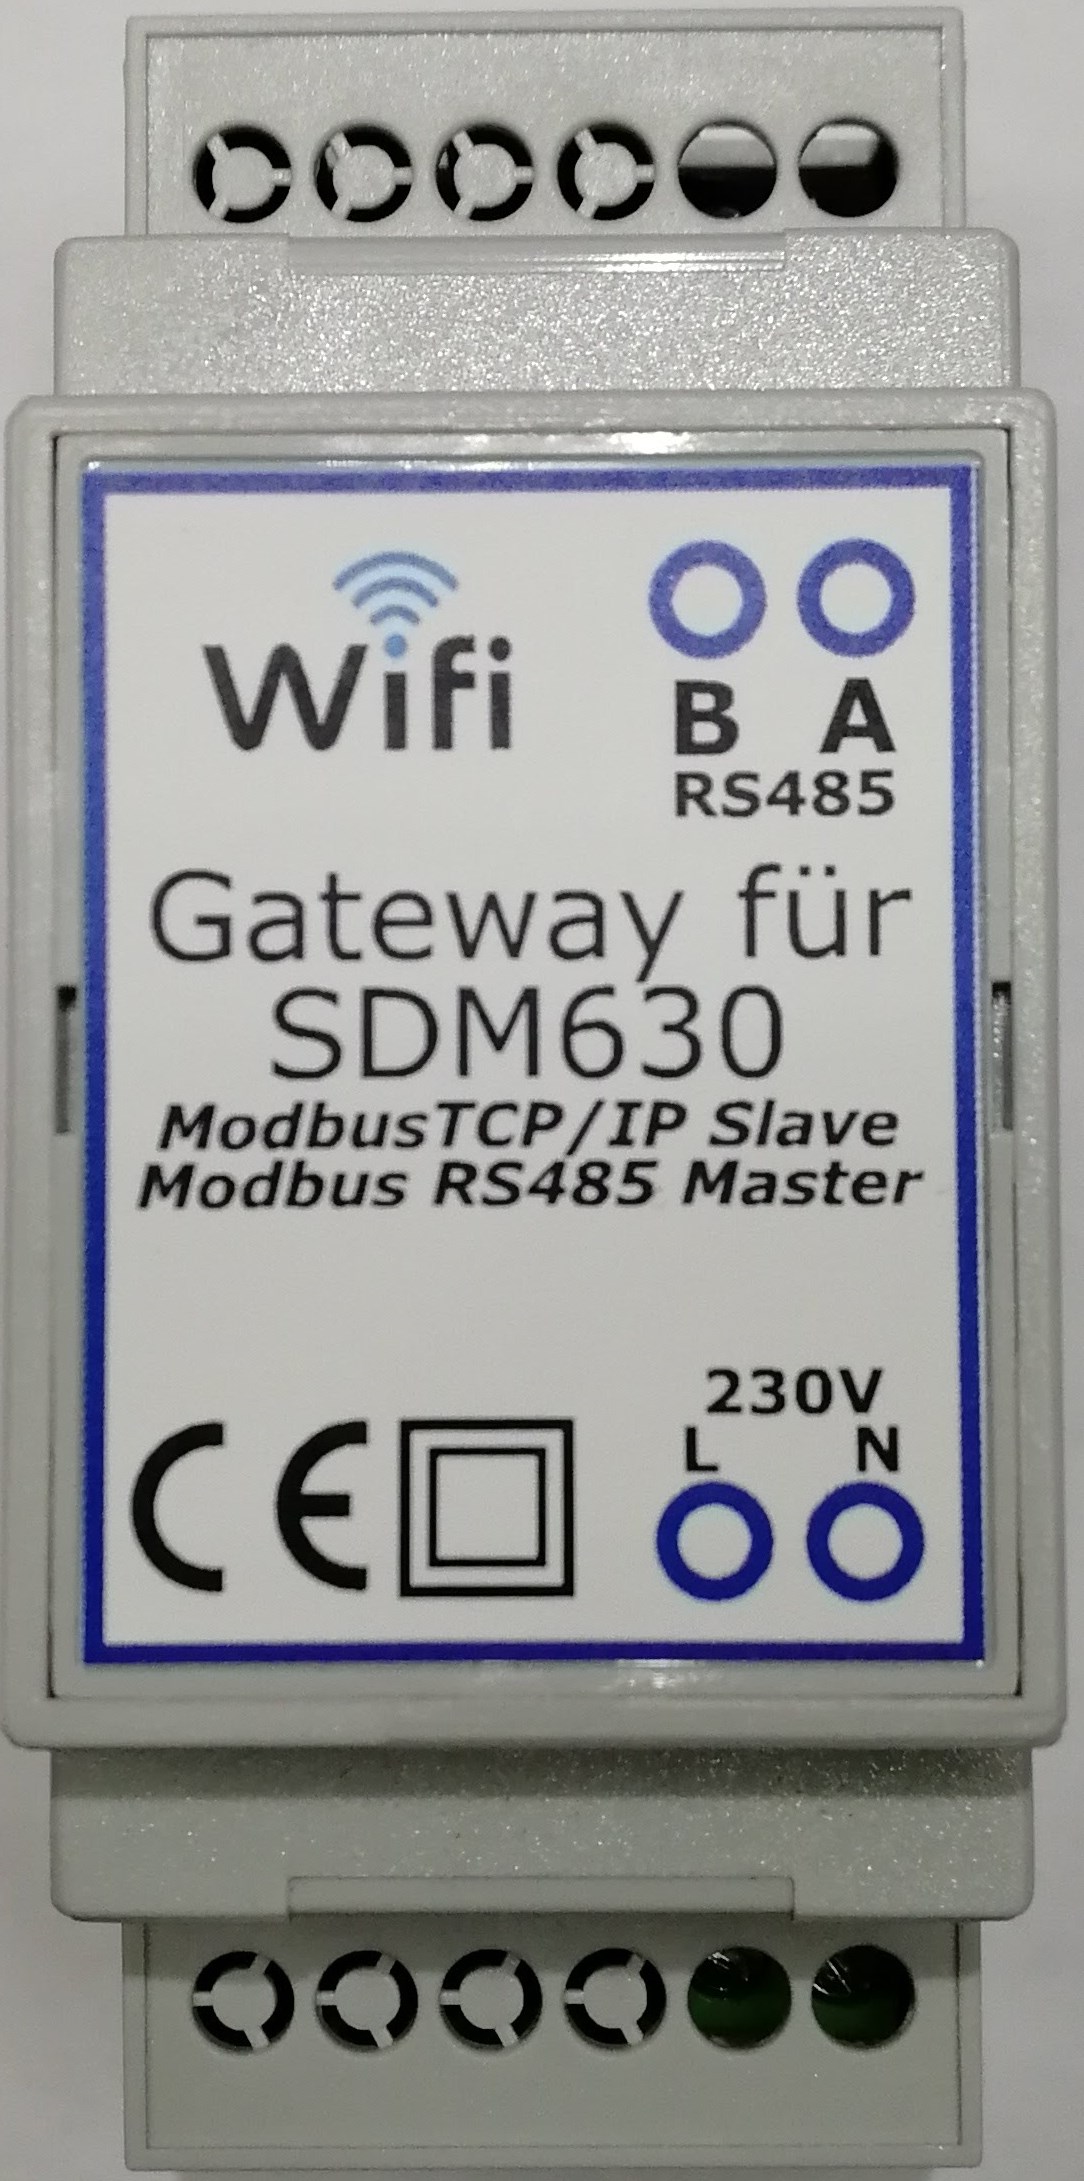 Gateway Modbus TCP/IP für SDM630 Zähler